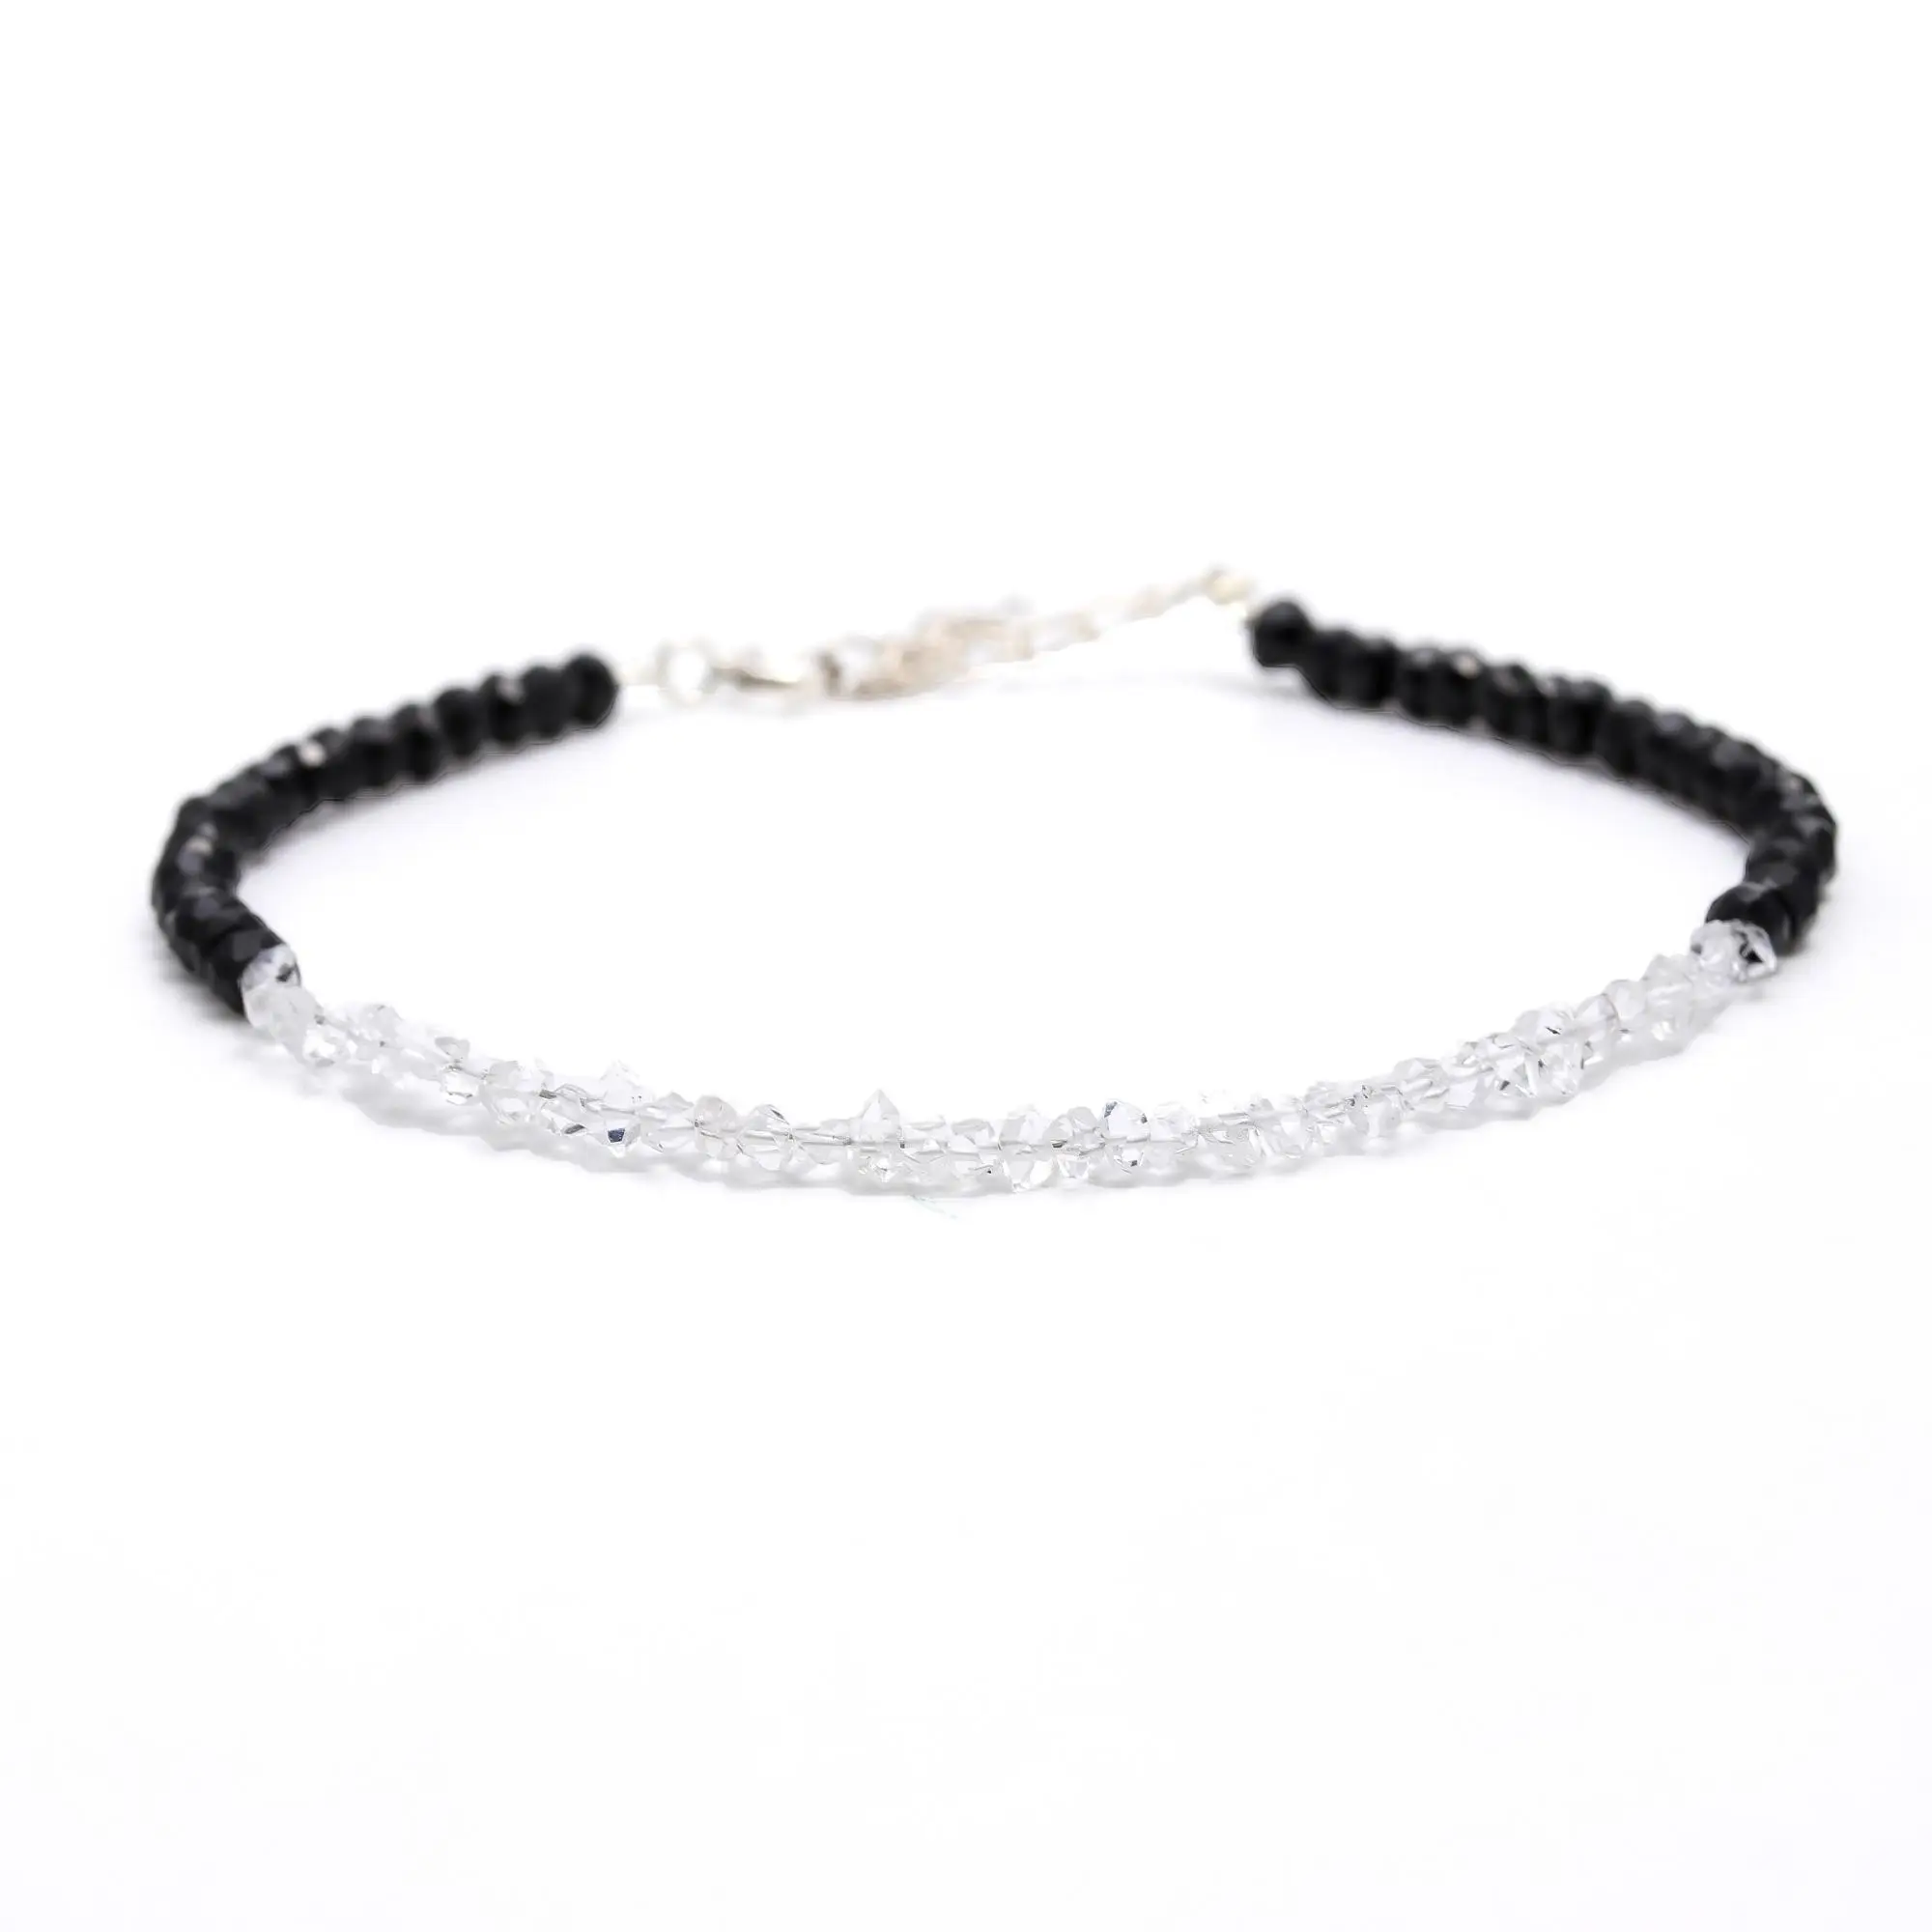 Rare Herkimer Diamond & Black Spinel Bracelet, Dainty Diamond Adjustable Jewelry Rough Diamond & Black Beads, Bridesmaid Gift